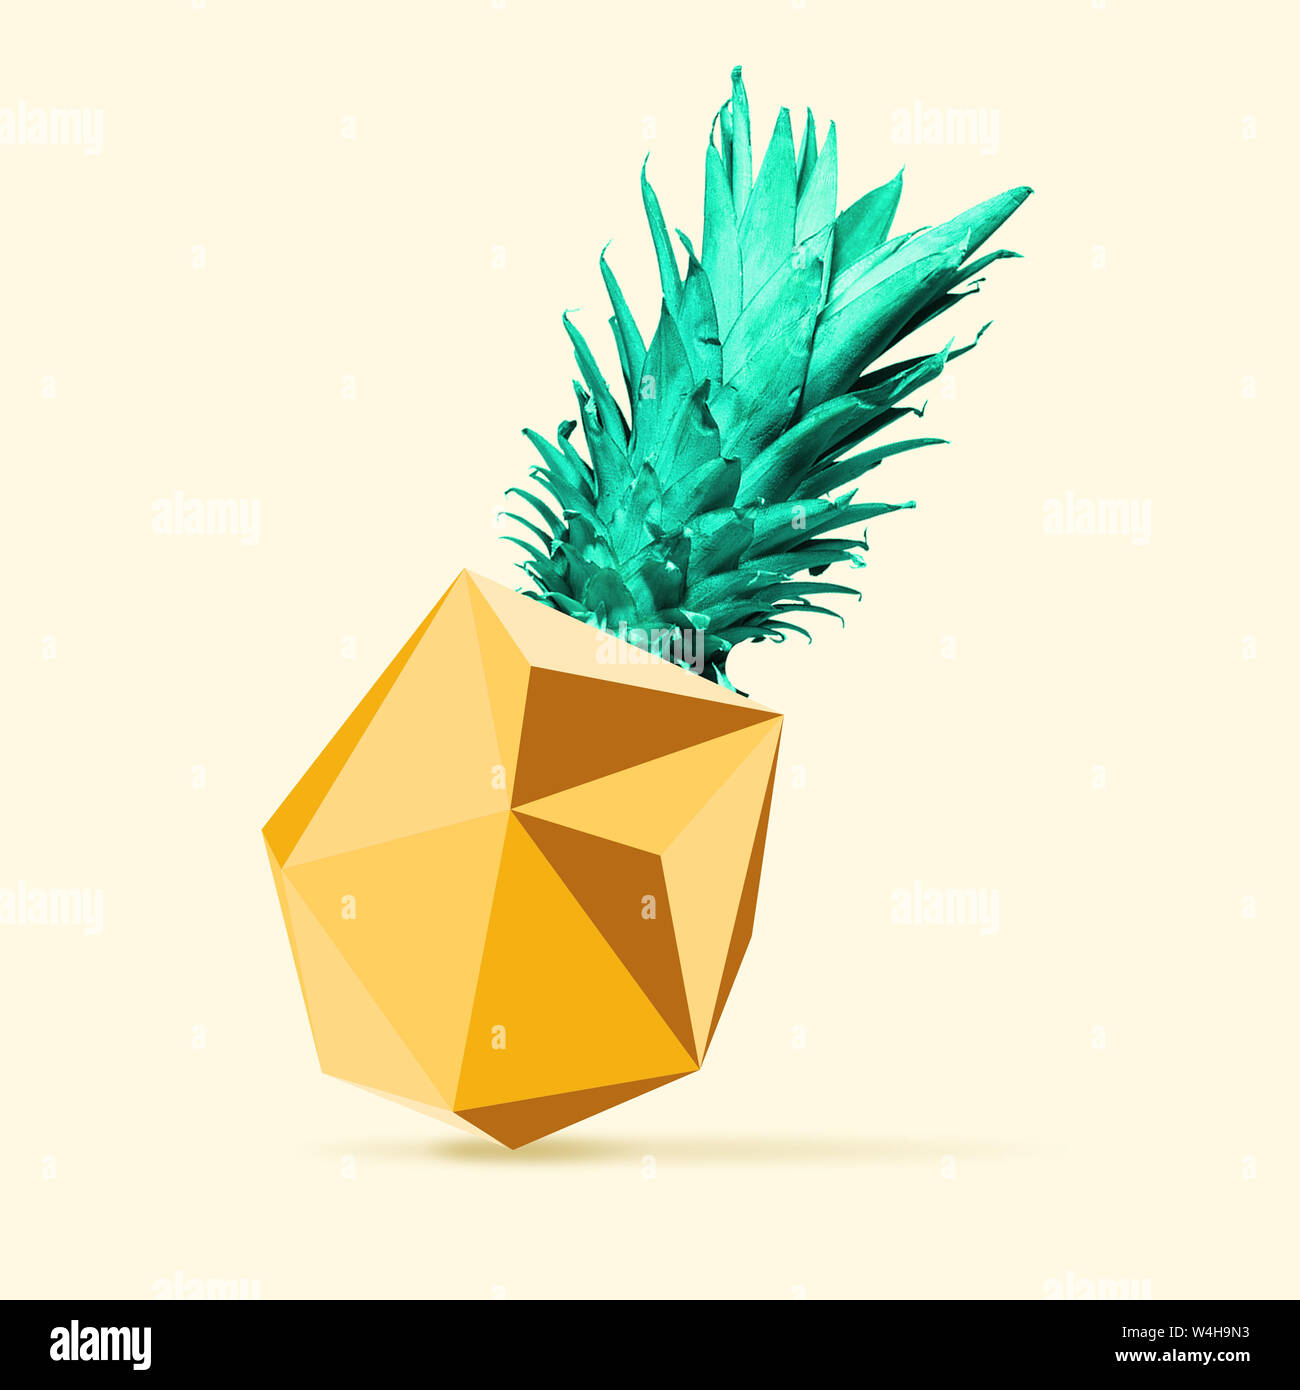 Una alternativa ananas come una pietra in oro o geometria figura su sfondo  giallo. Nuovo look di frutti, solite cose. Lo spazio negativo per inserire  il tuo testo. Il design moderno. Contemporanea